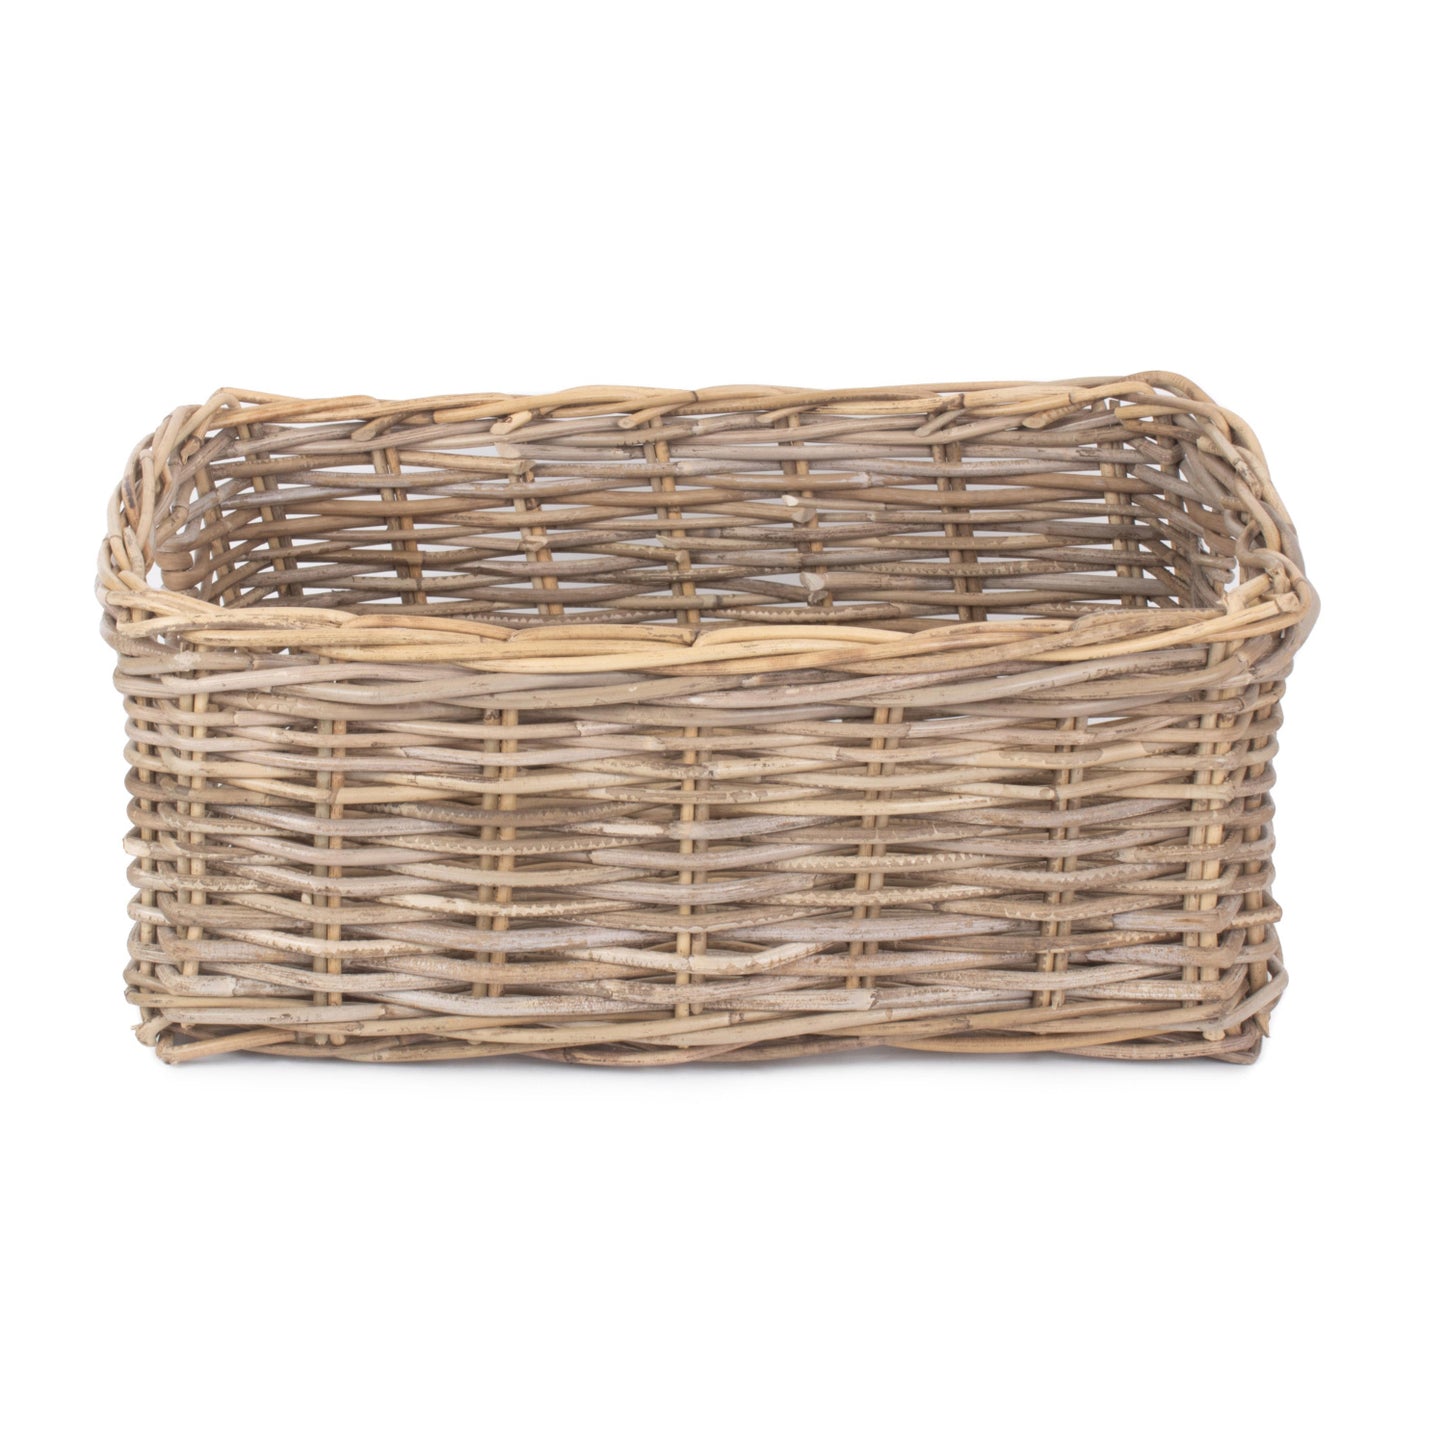 Extra Large Shallow Rattan Rectangular Basket